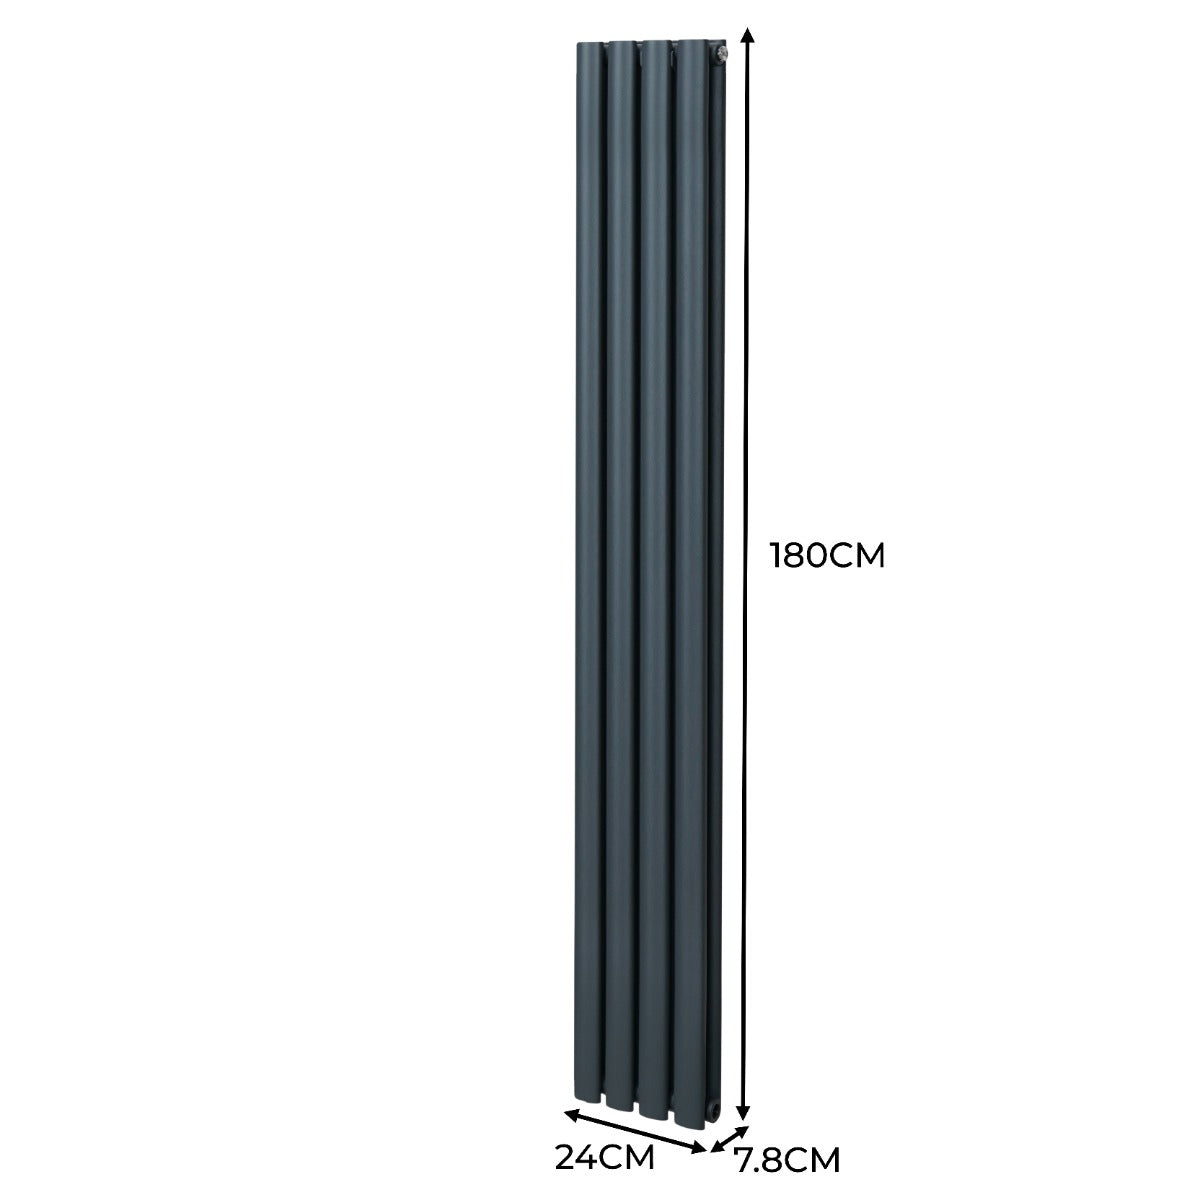 Radiatore a colonna ovale e valvole cromate TRV - 1800mm x 240mm - Grigio antracite